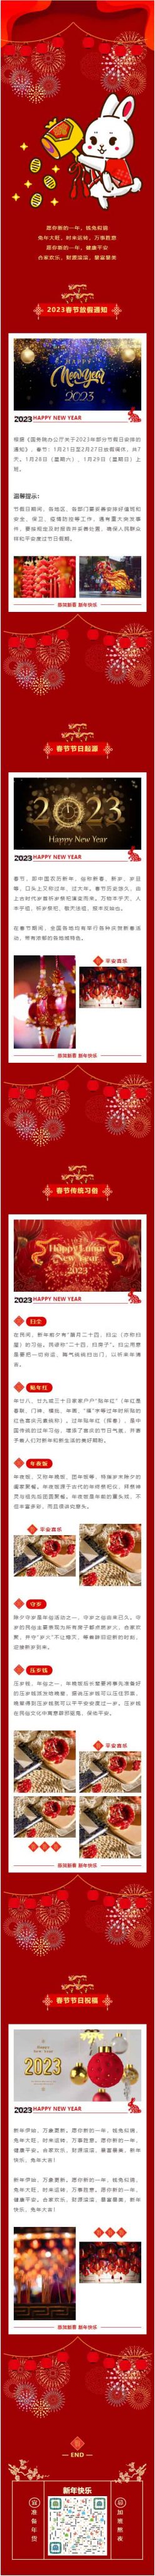 2023恭贺新春新年快乐春节除夕微信公众号图文设计模板